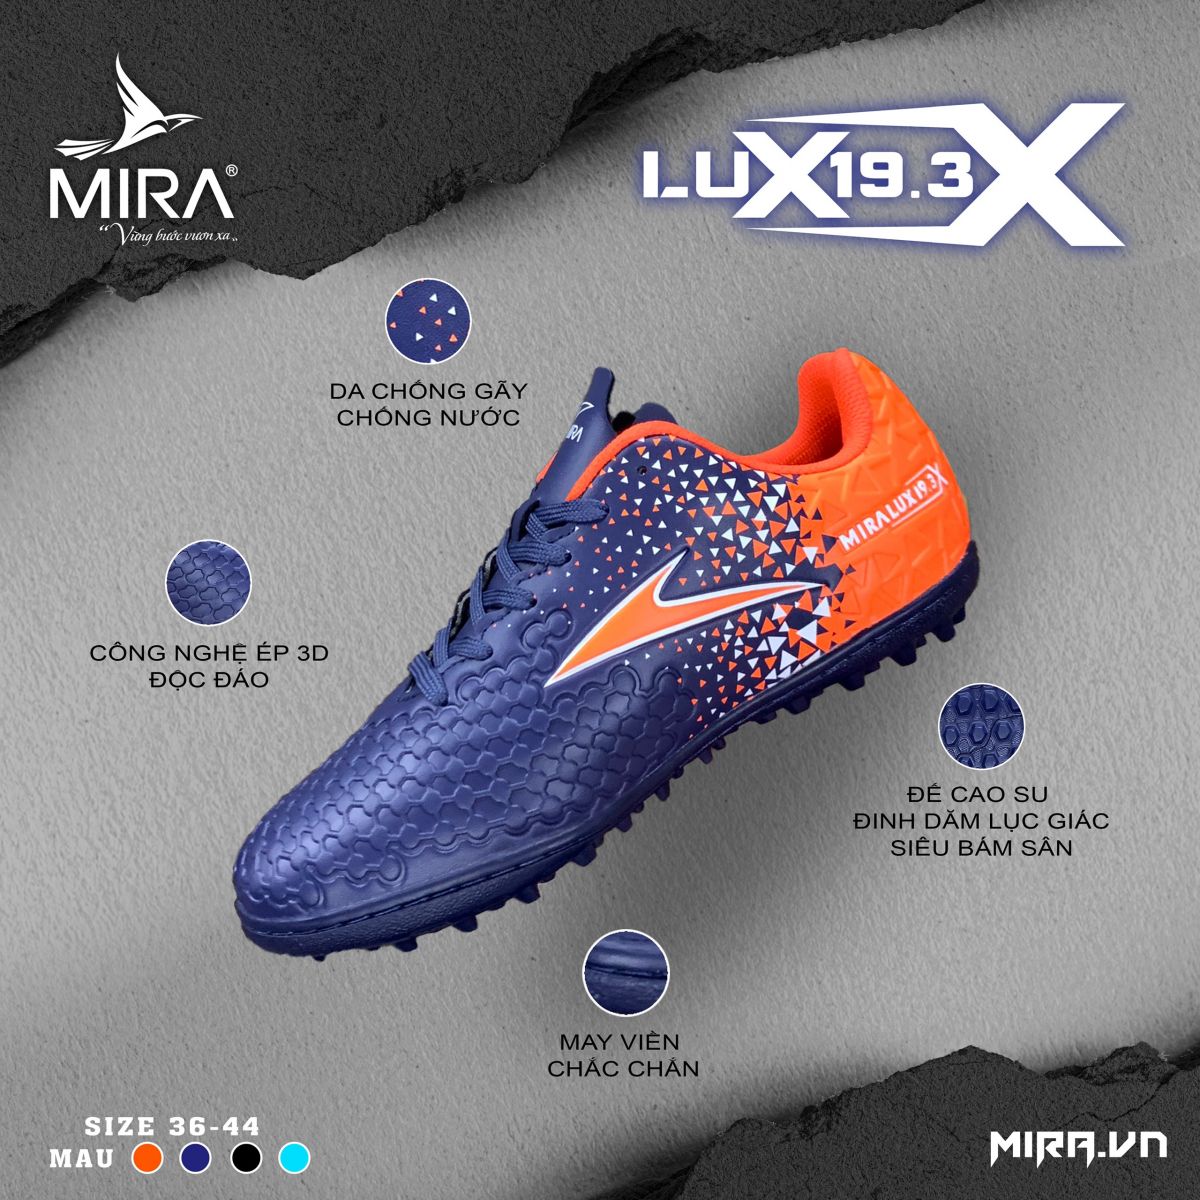 Giày đá bóng Mira Lux 19.3X TF chính hãng cho sân cỏ nhân tạo - Deal giảm sốc tại BeeSport